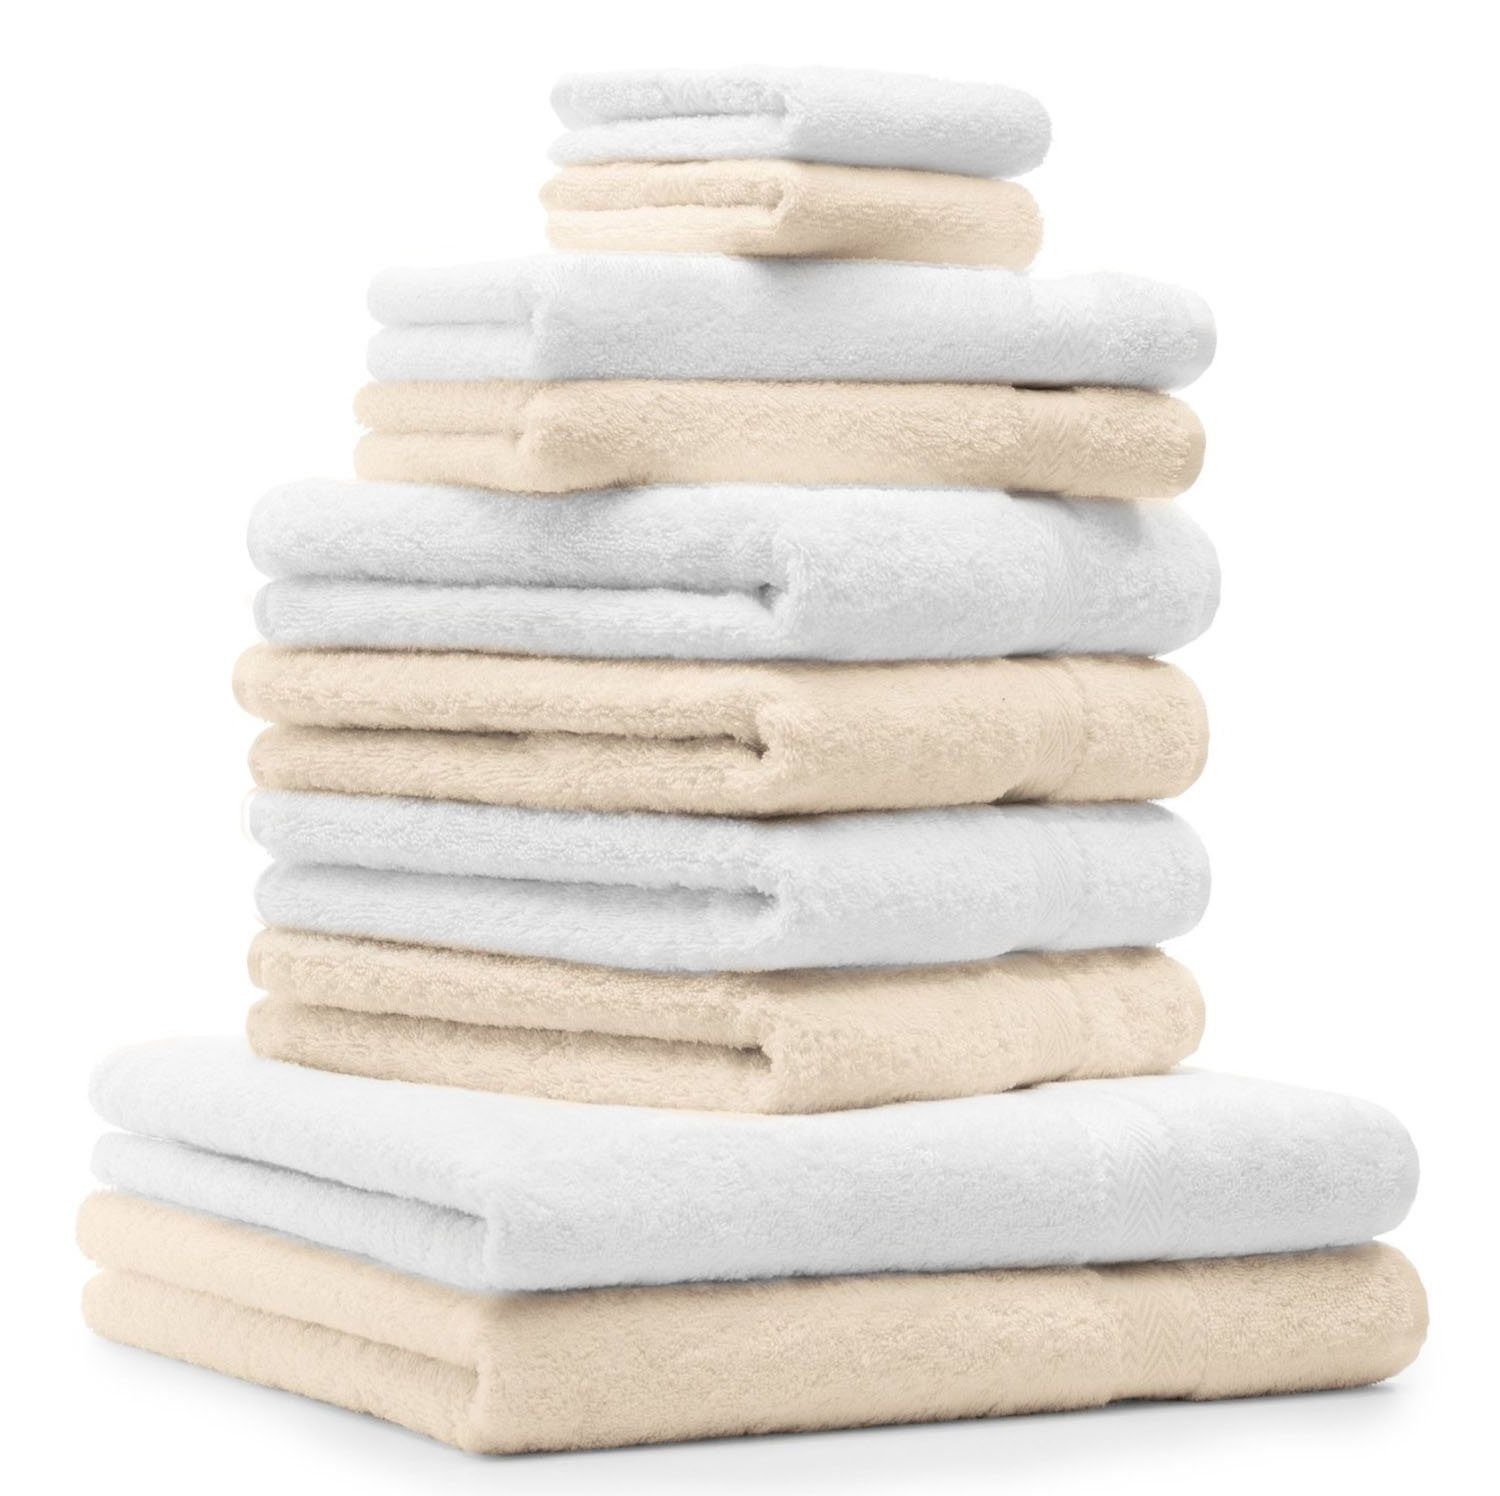 Betz Handtuch Set 10-TLG. Handtuch-Set Premium Farbe Beige & Weiß, 100% Baumwolle, (Set, 10-tlg), saugstark und strapazierfähig